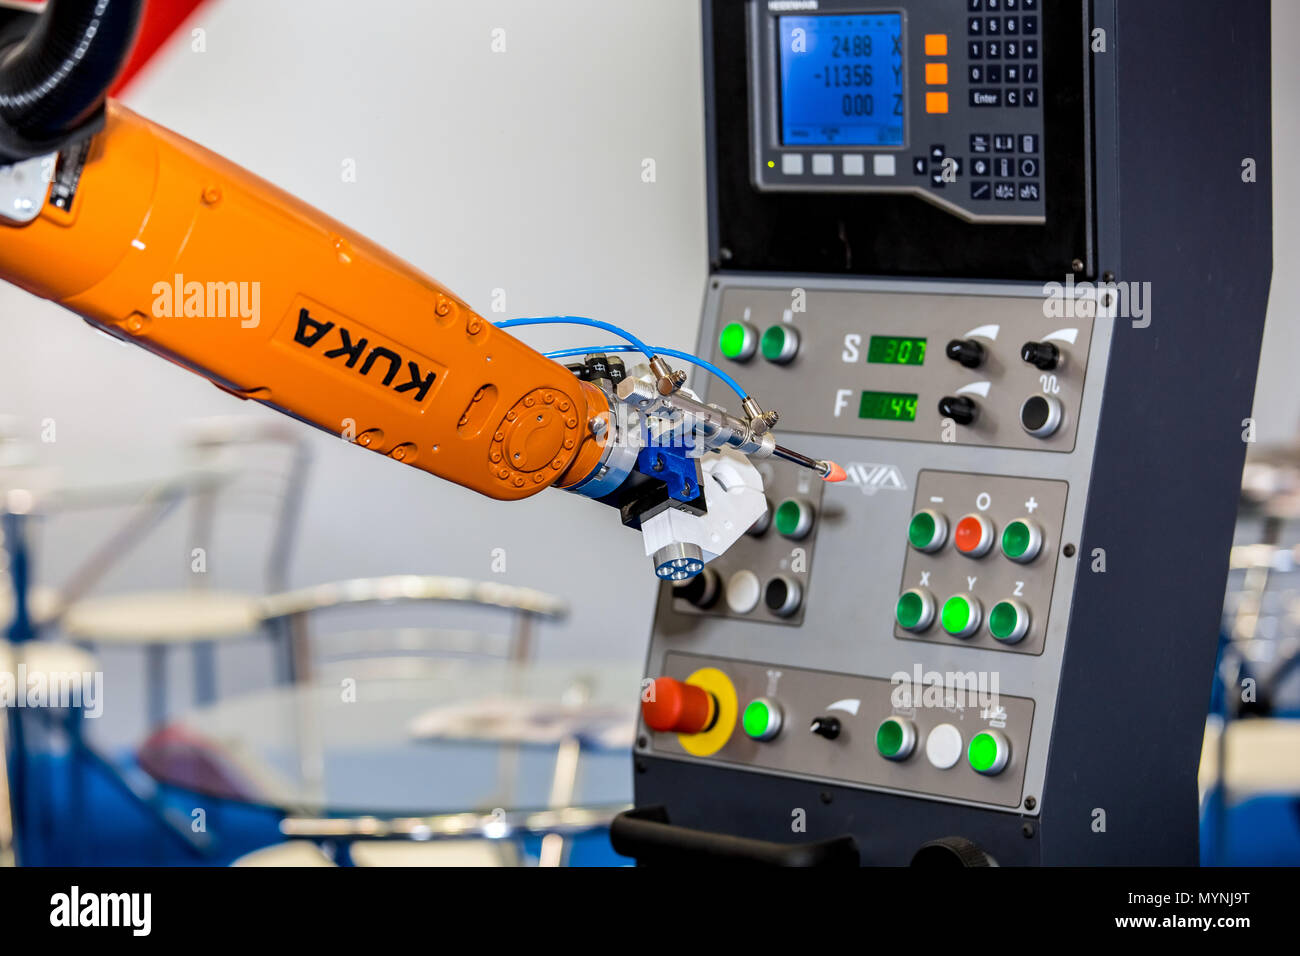 Kuka Robot Arm drücken der Tasten auf dem Bedienfeld der CNC-Maschine Stockfoto